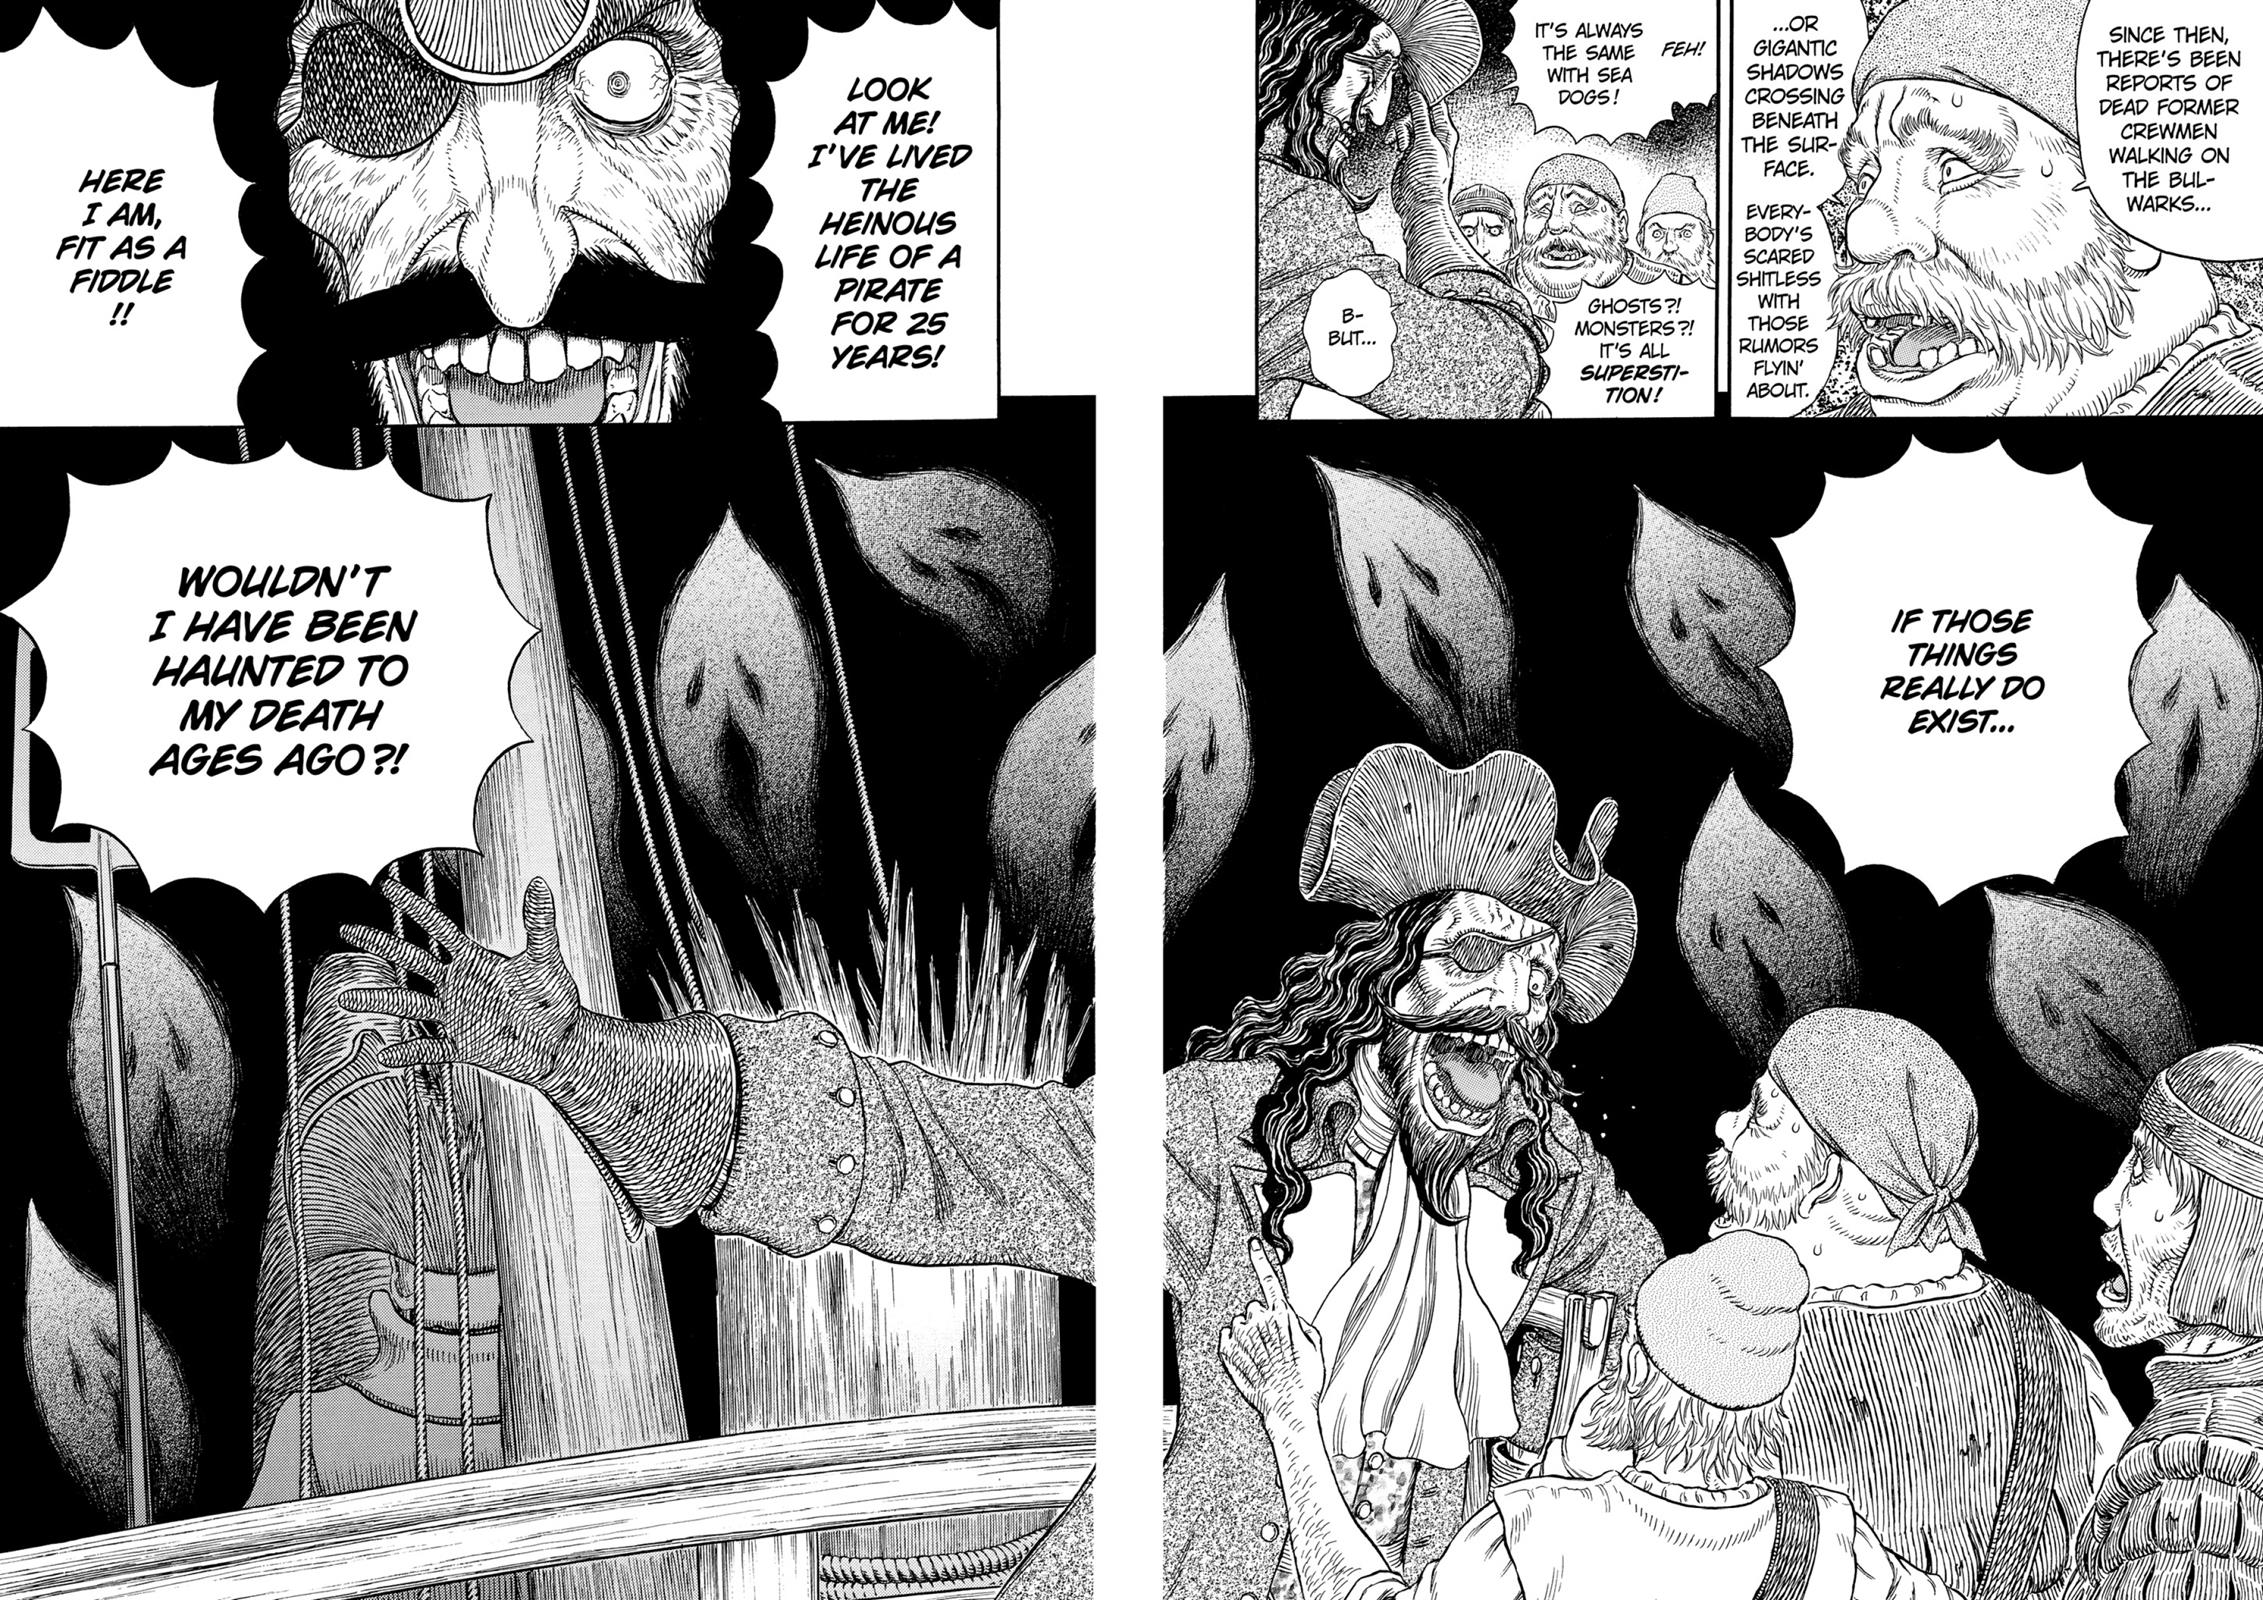 Berserk Manga Chapter 308 image 05